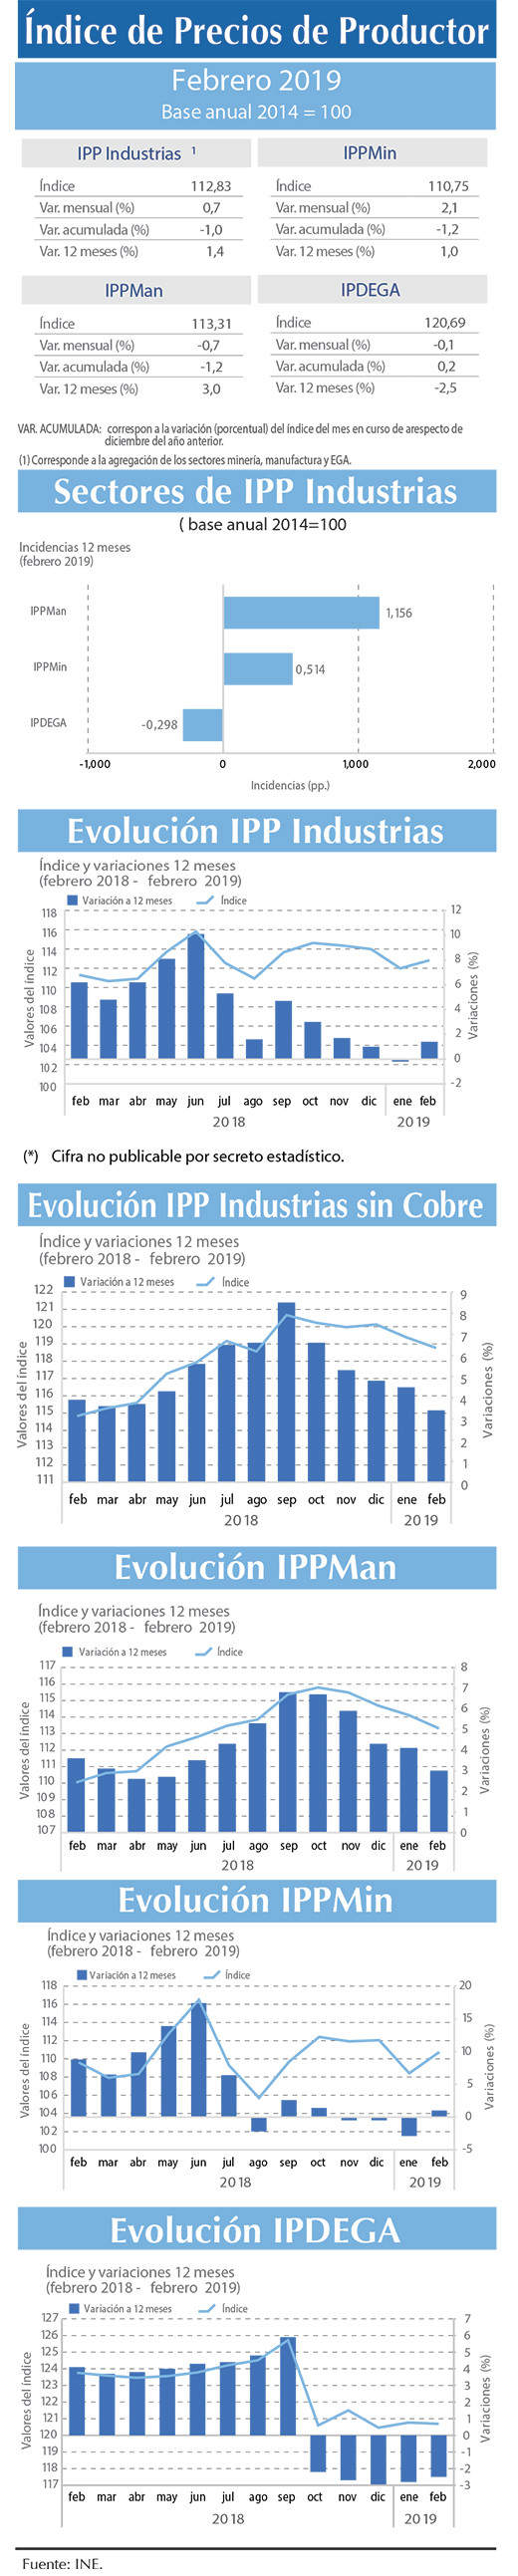 Indice IPP INDUSTRIAS (2)